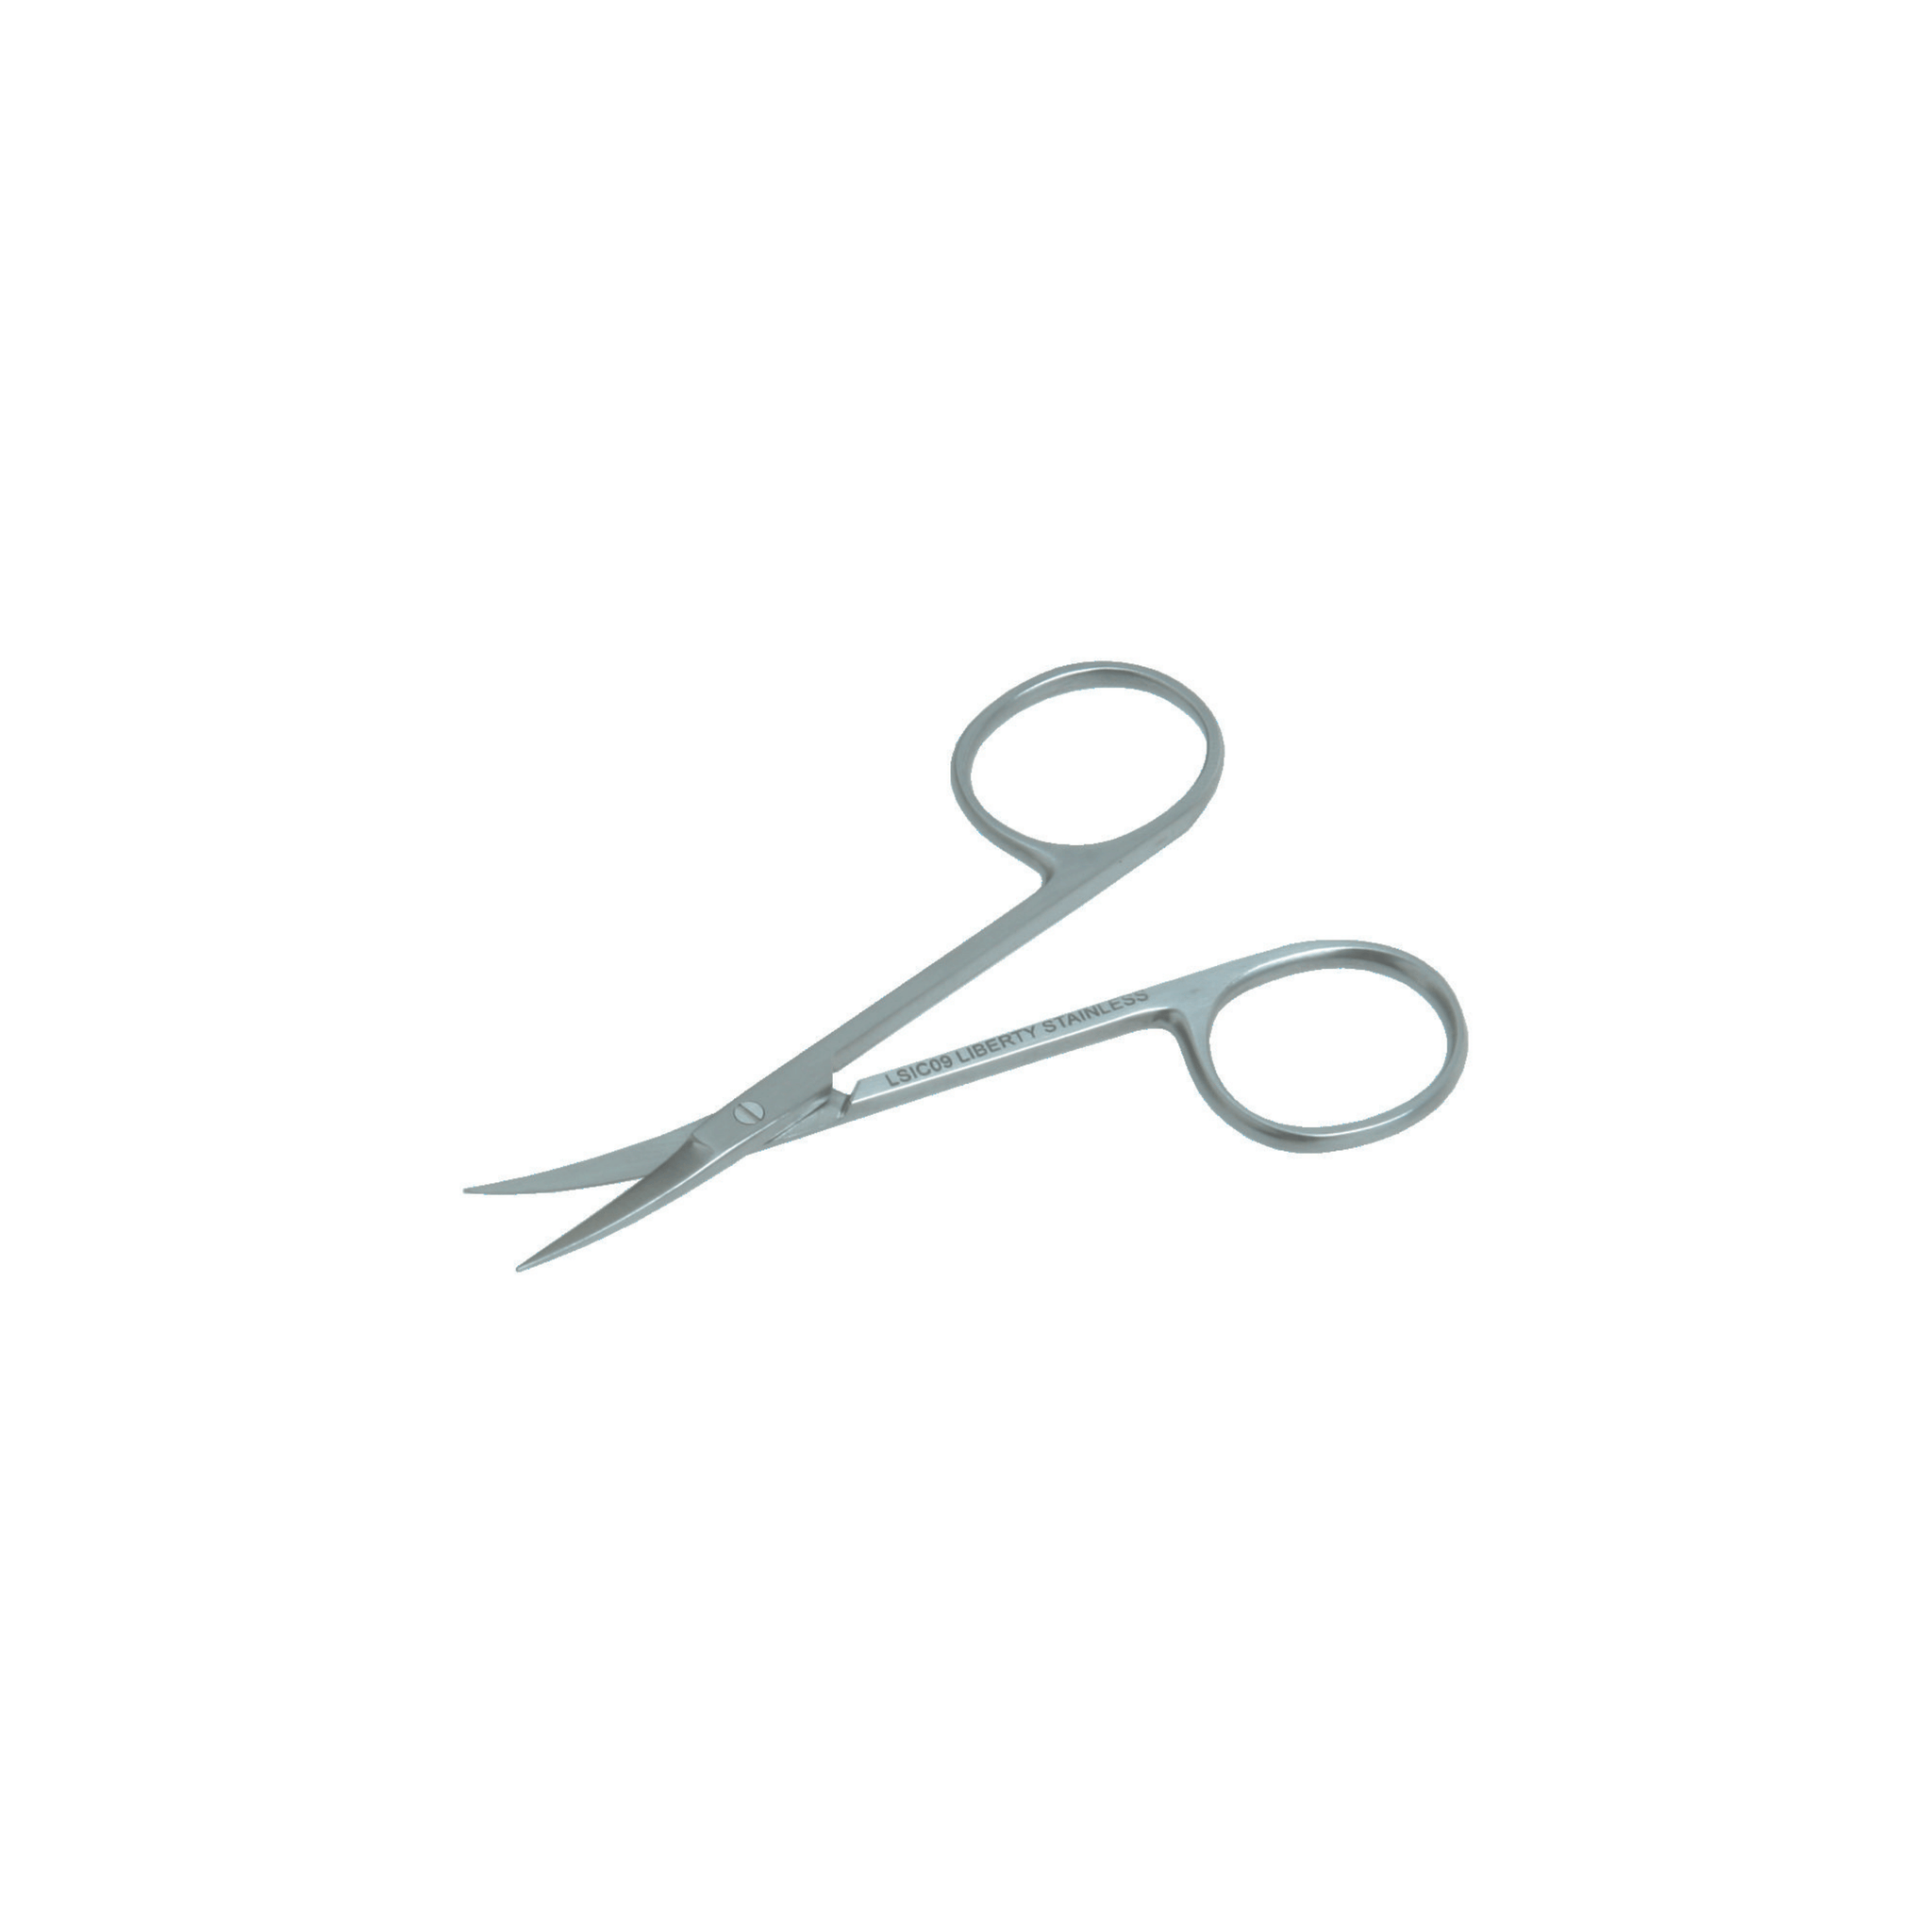 Iris Scissors- Curved, 9 cm